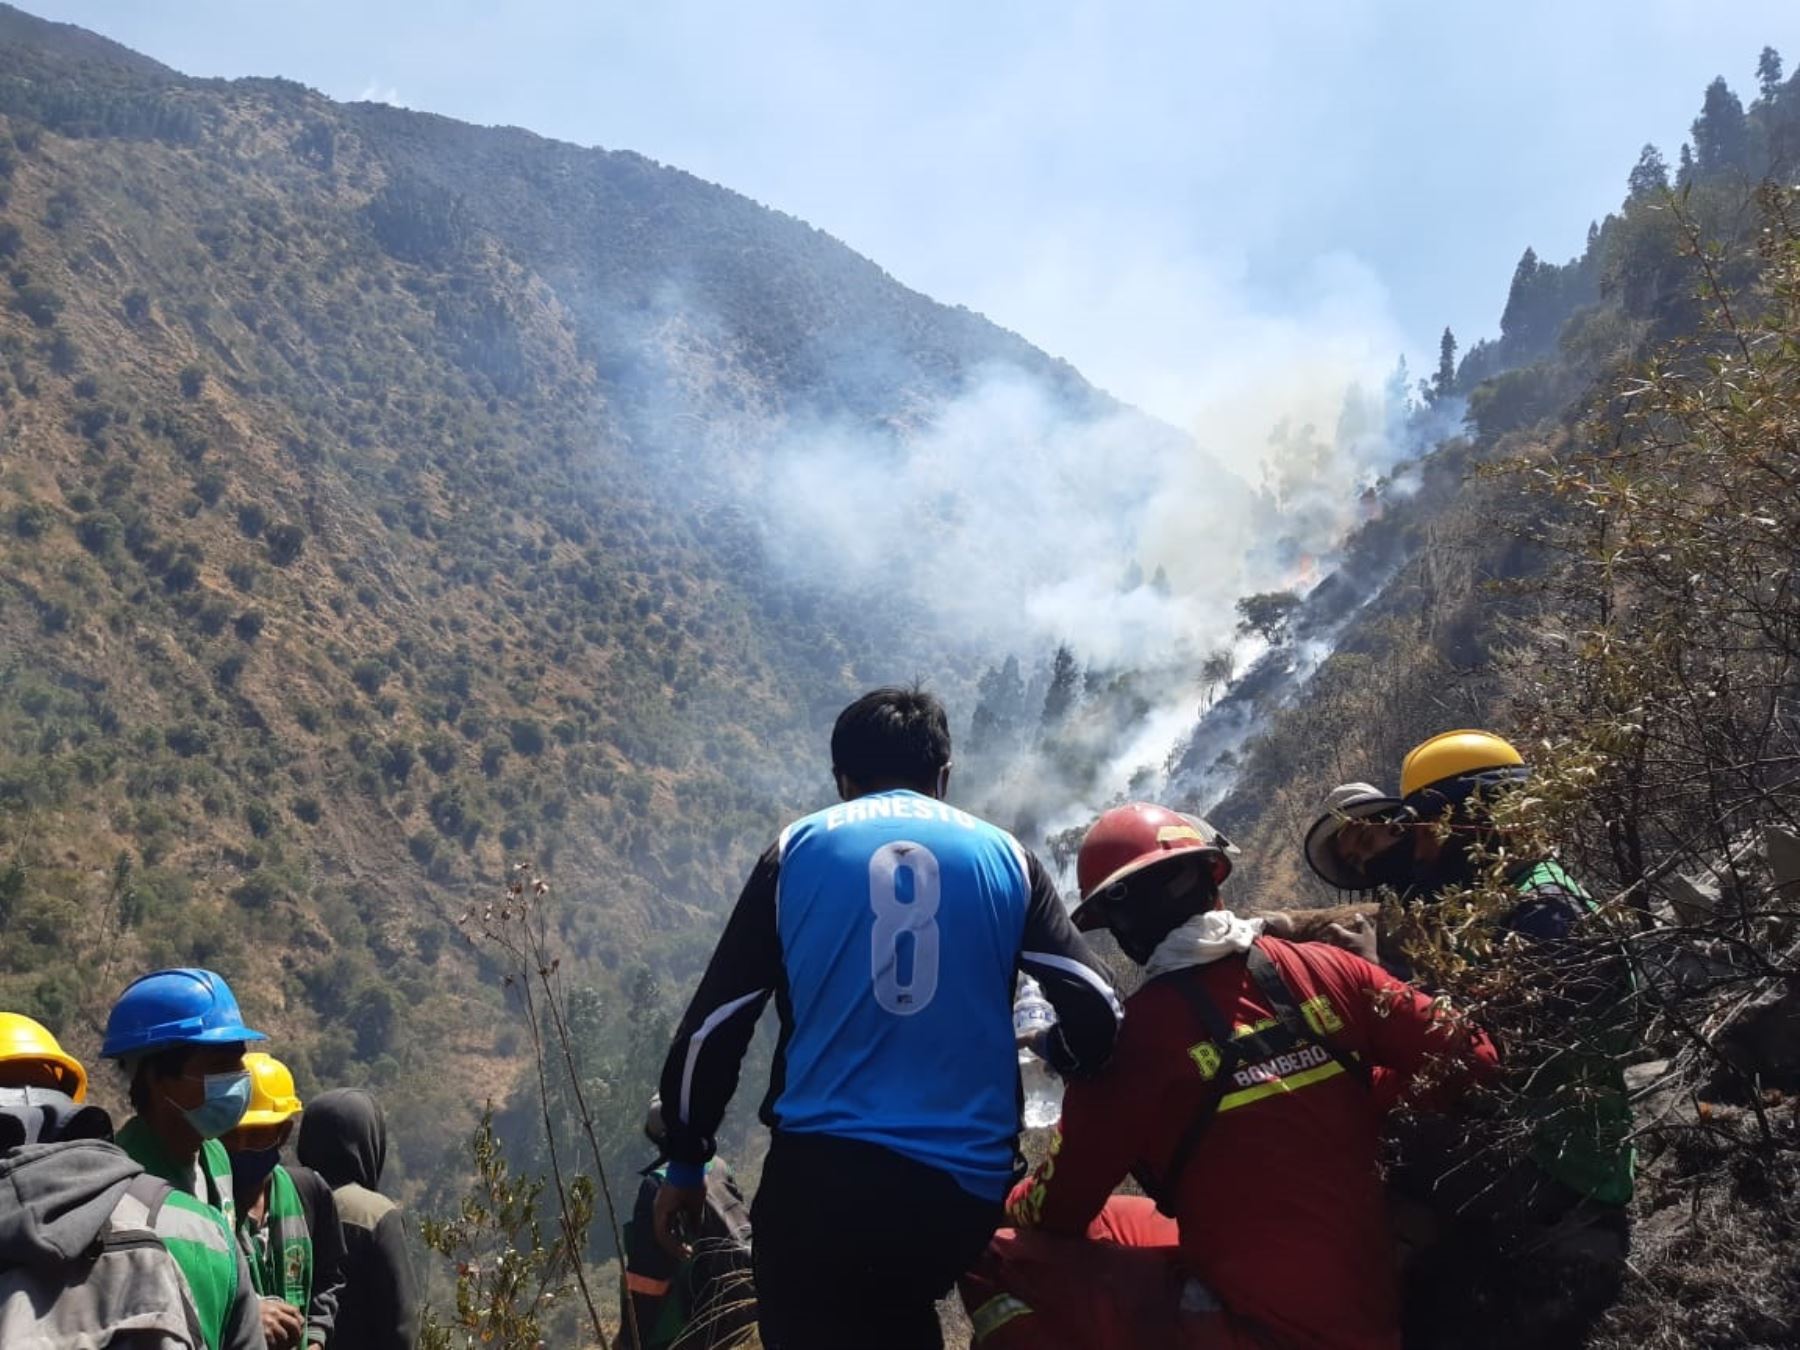 Bomberos de Cusco solicitan envío de helicópteros para sofocar incendio forestal en Calca que amenaza al parque arqueológico Huchuy Qosqo.